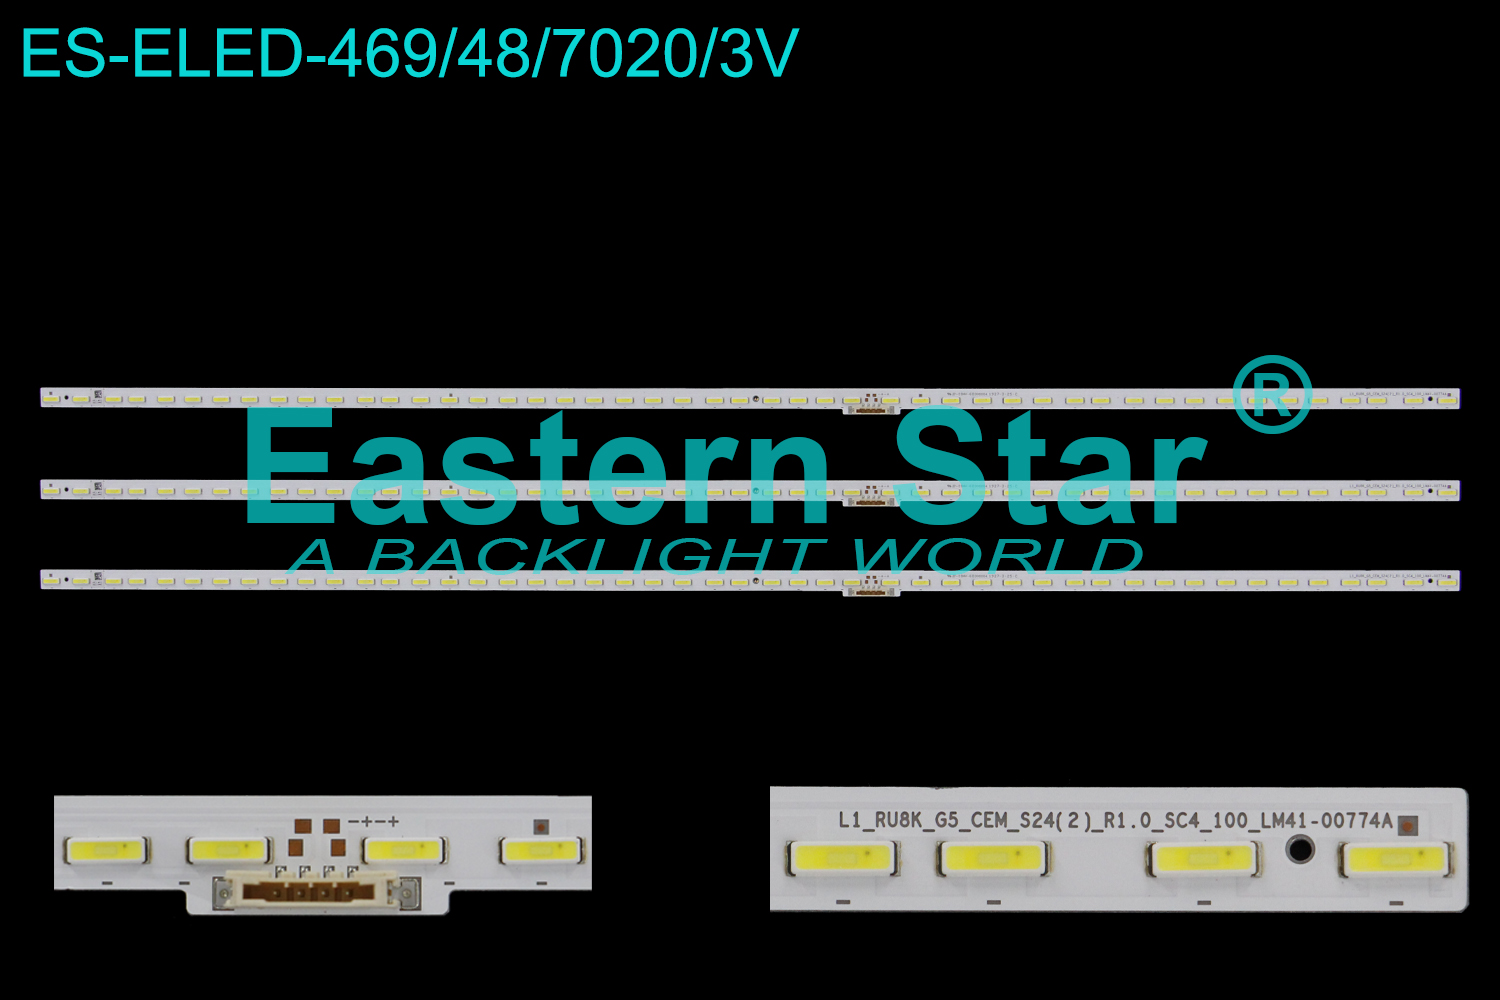 ES-ELED-469 ELED/EDGE TV backlight use for 75'' Samsung LH75QBREBGCXZA BN96-48379A  L1_RU8K_G5_CEM_S24(2)_R1.0_SC4_100_LM41-00723A| LM41-00774A LED STRIPS(3）